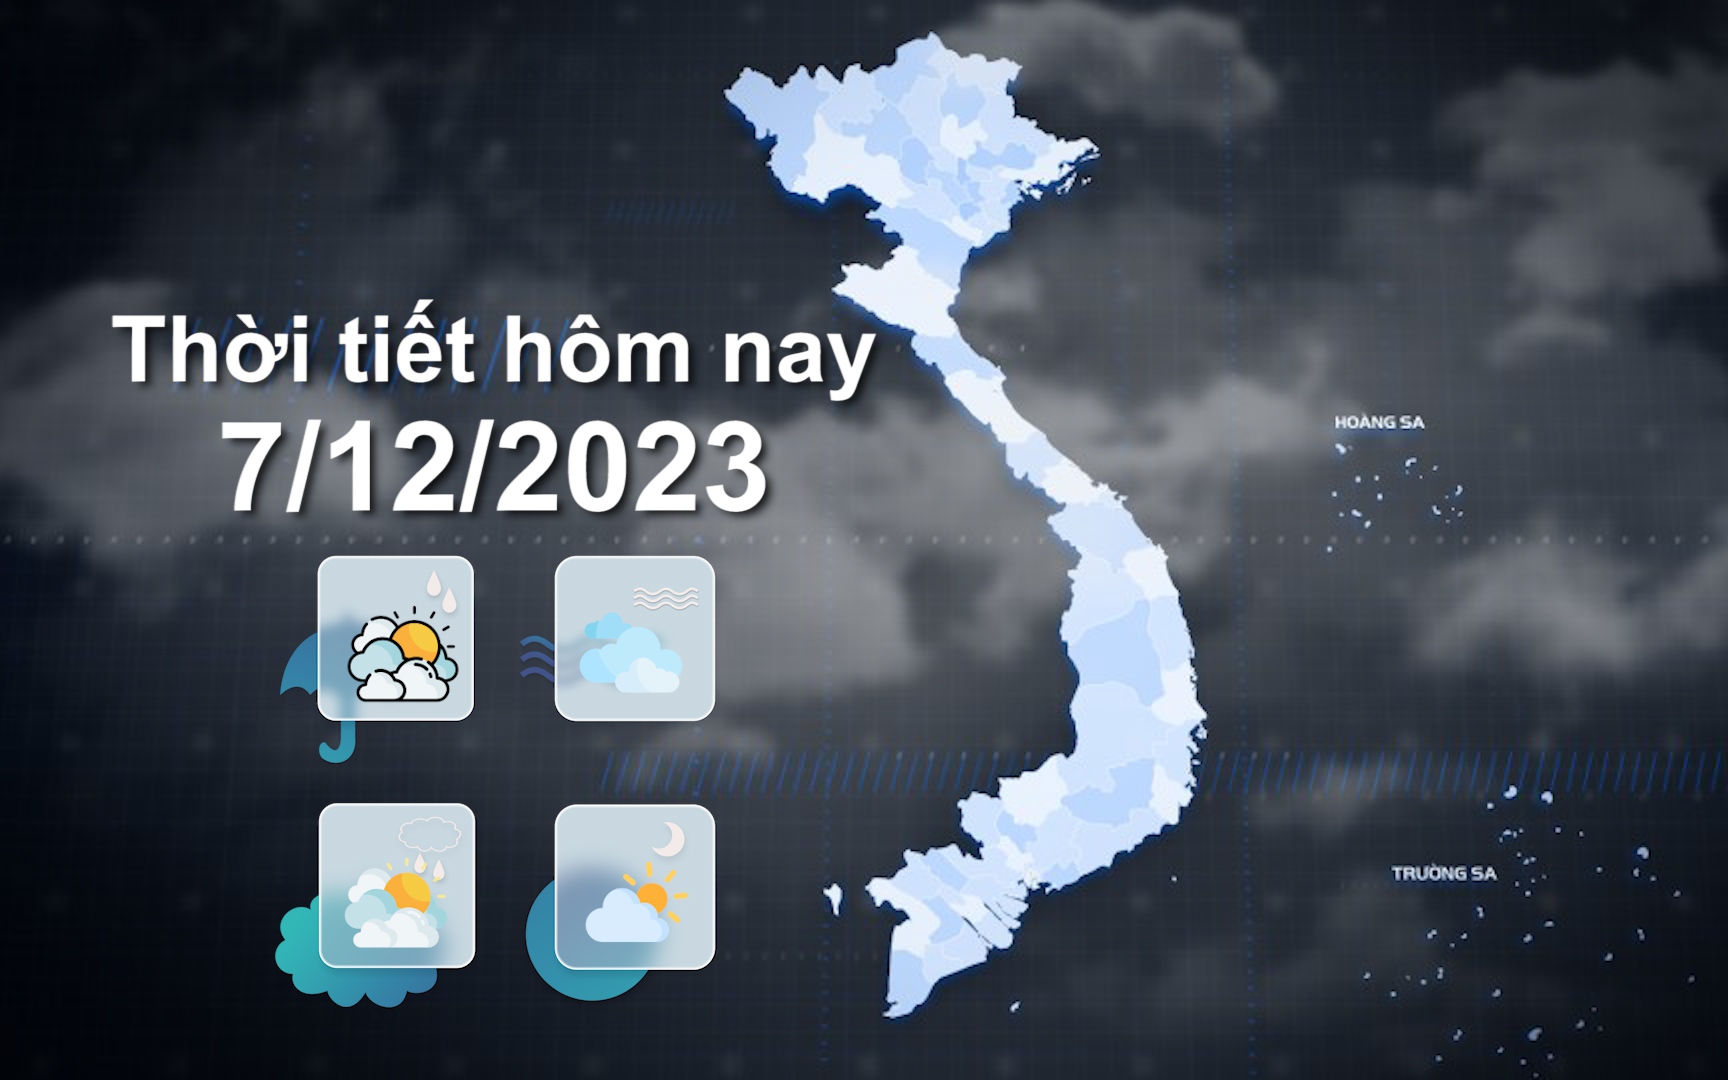 Thời tiết hôm nay 7/12/2023: Bắc Bộ sáng trời rét; Trung Trung Bộ có mưa